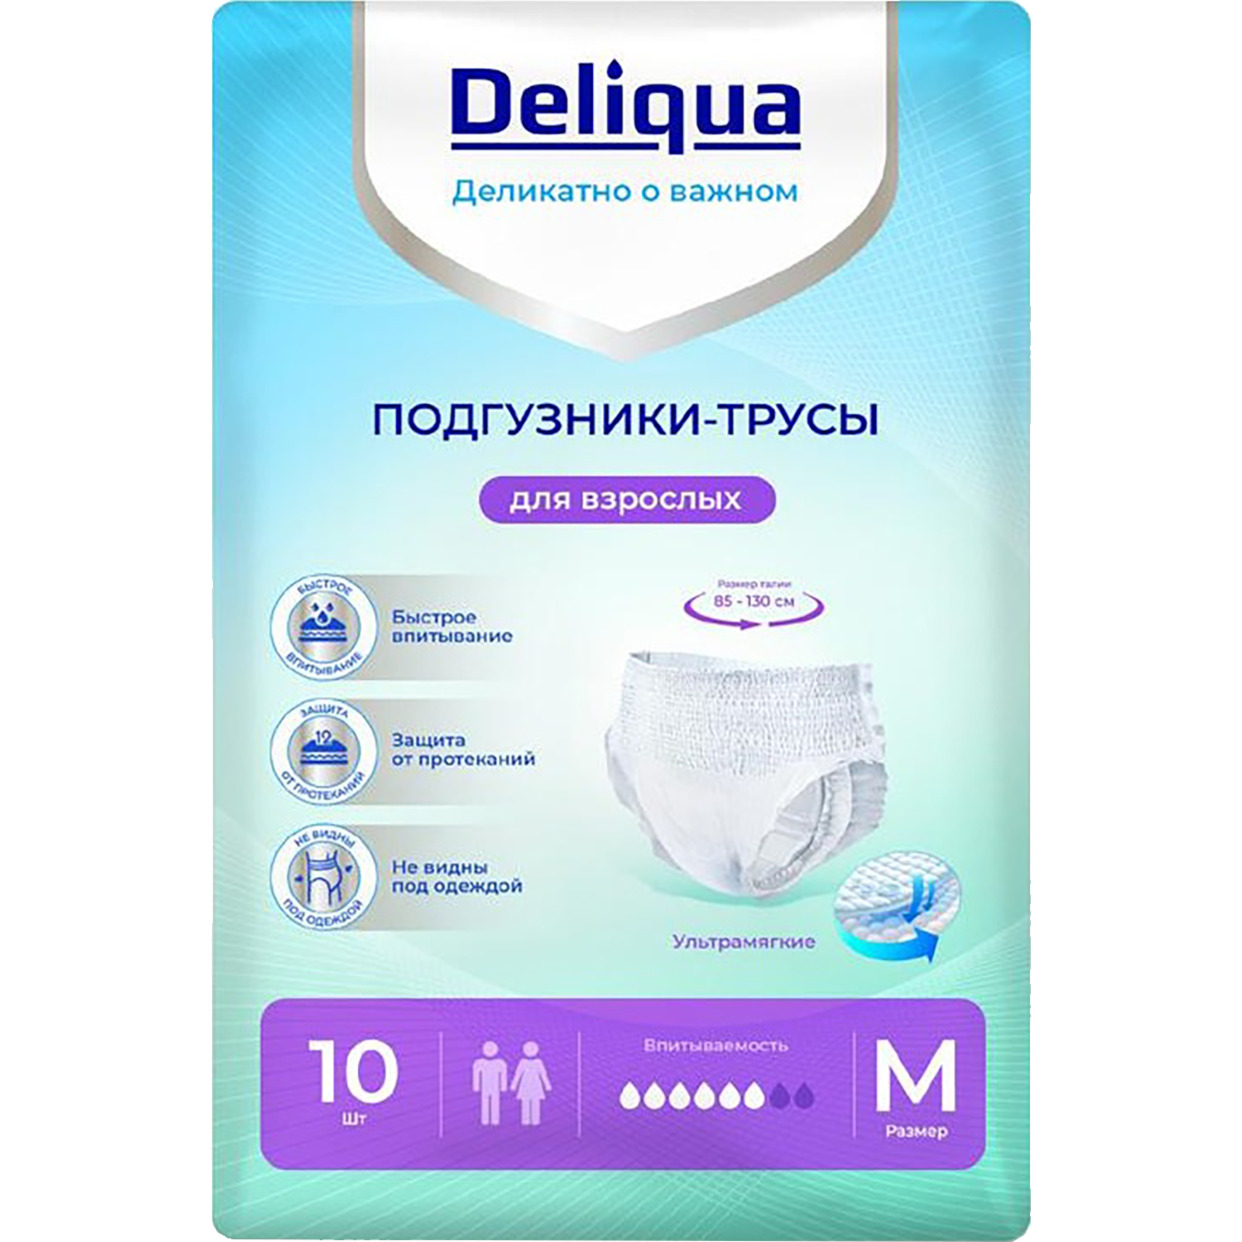 Подгузники-трусы DELIQUA для взрослых размер М 10шт